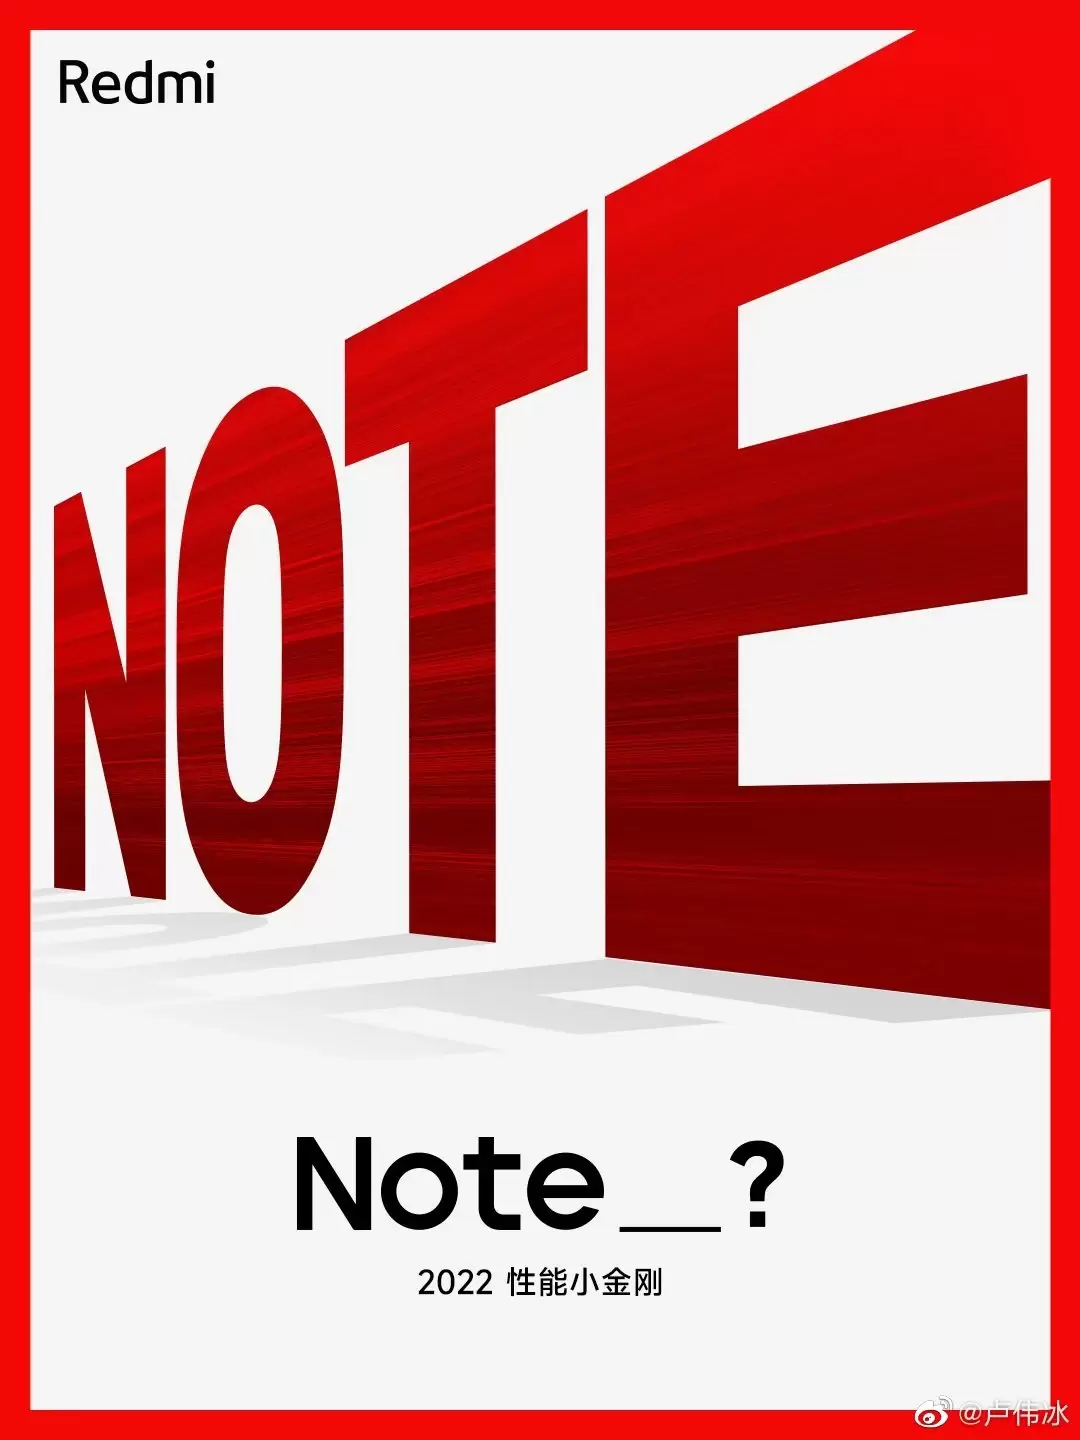 Redmi Note 12 на подходе: опубликован тизер